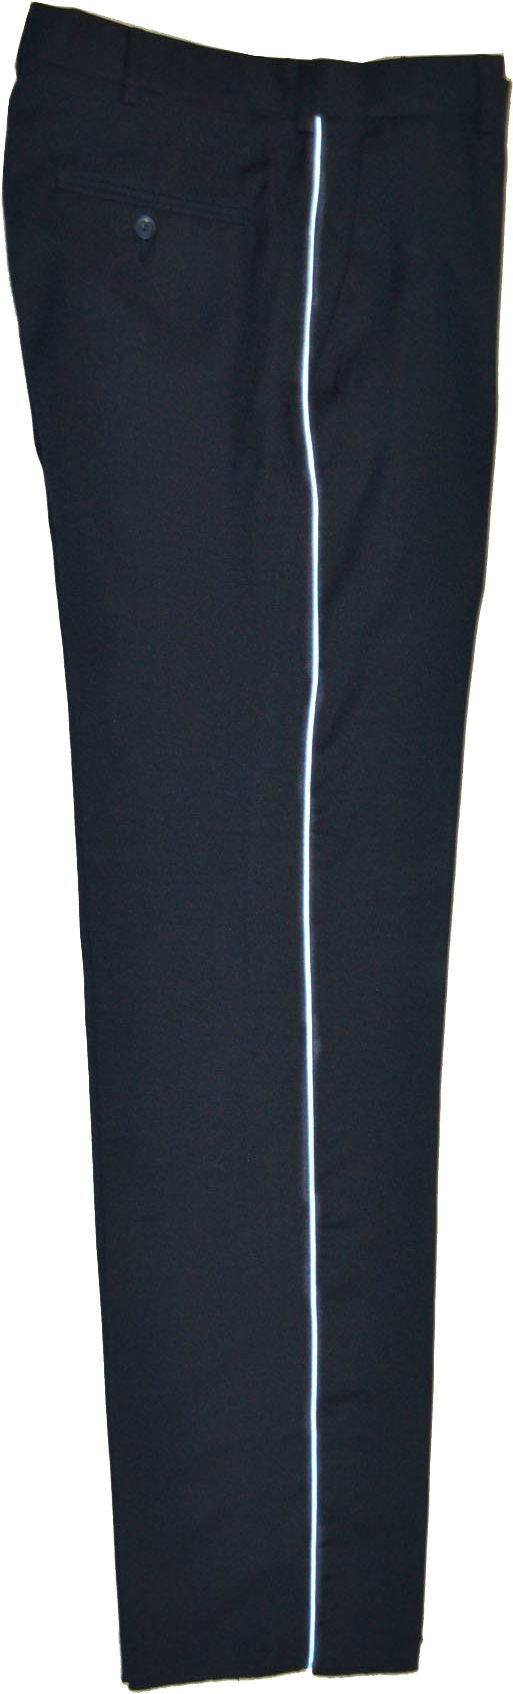 Pantalon De Vestir A - Tights Clipart (700x1744), Png Download